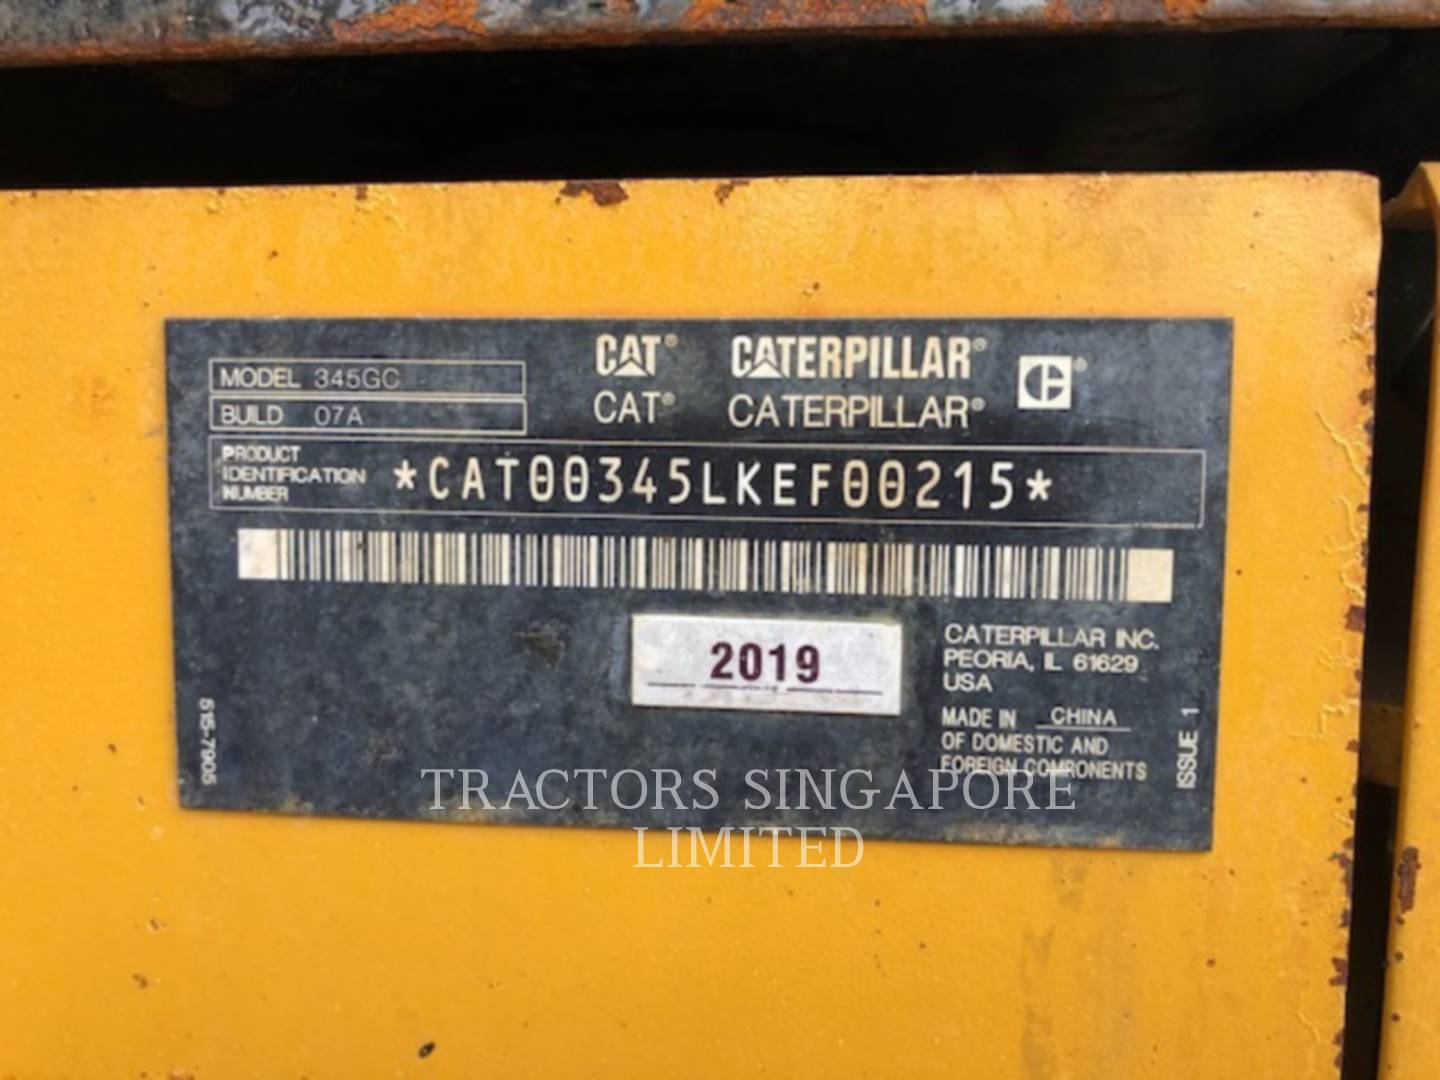 wtk?JHNyYz1kY2JiYTI4ZDdlN2JkZjJmZjNjZWU4MDg0NDk5MGZhZSYkdHh0PVRSQUNUT1JTJTIwU0lOR0FQT1JFJTIwTElNSVRFRCYyNTE2Nw== 345-07GC | Tractors Singapore